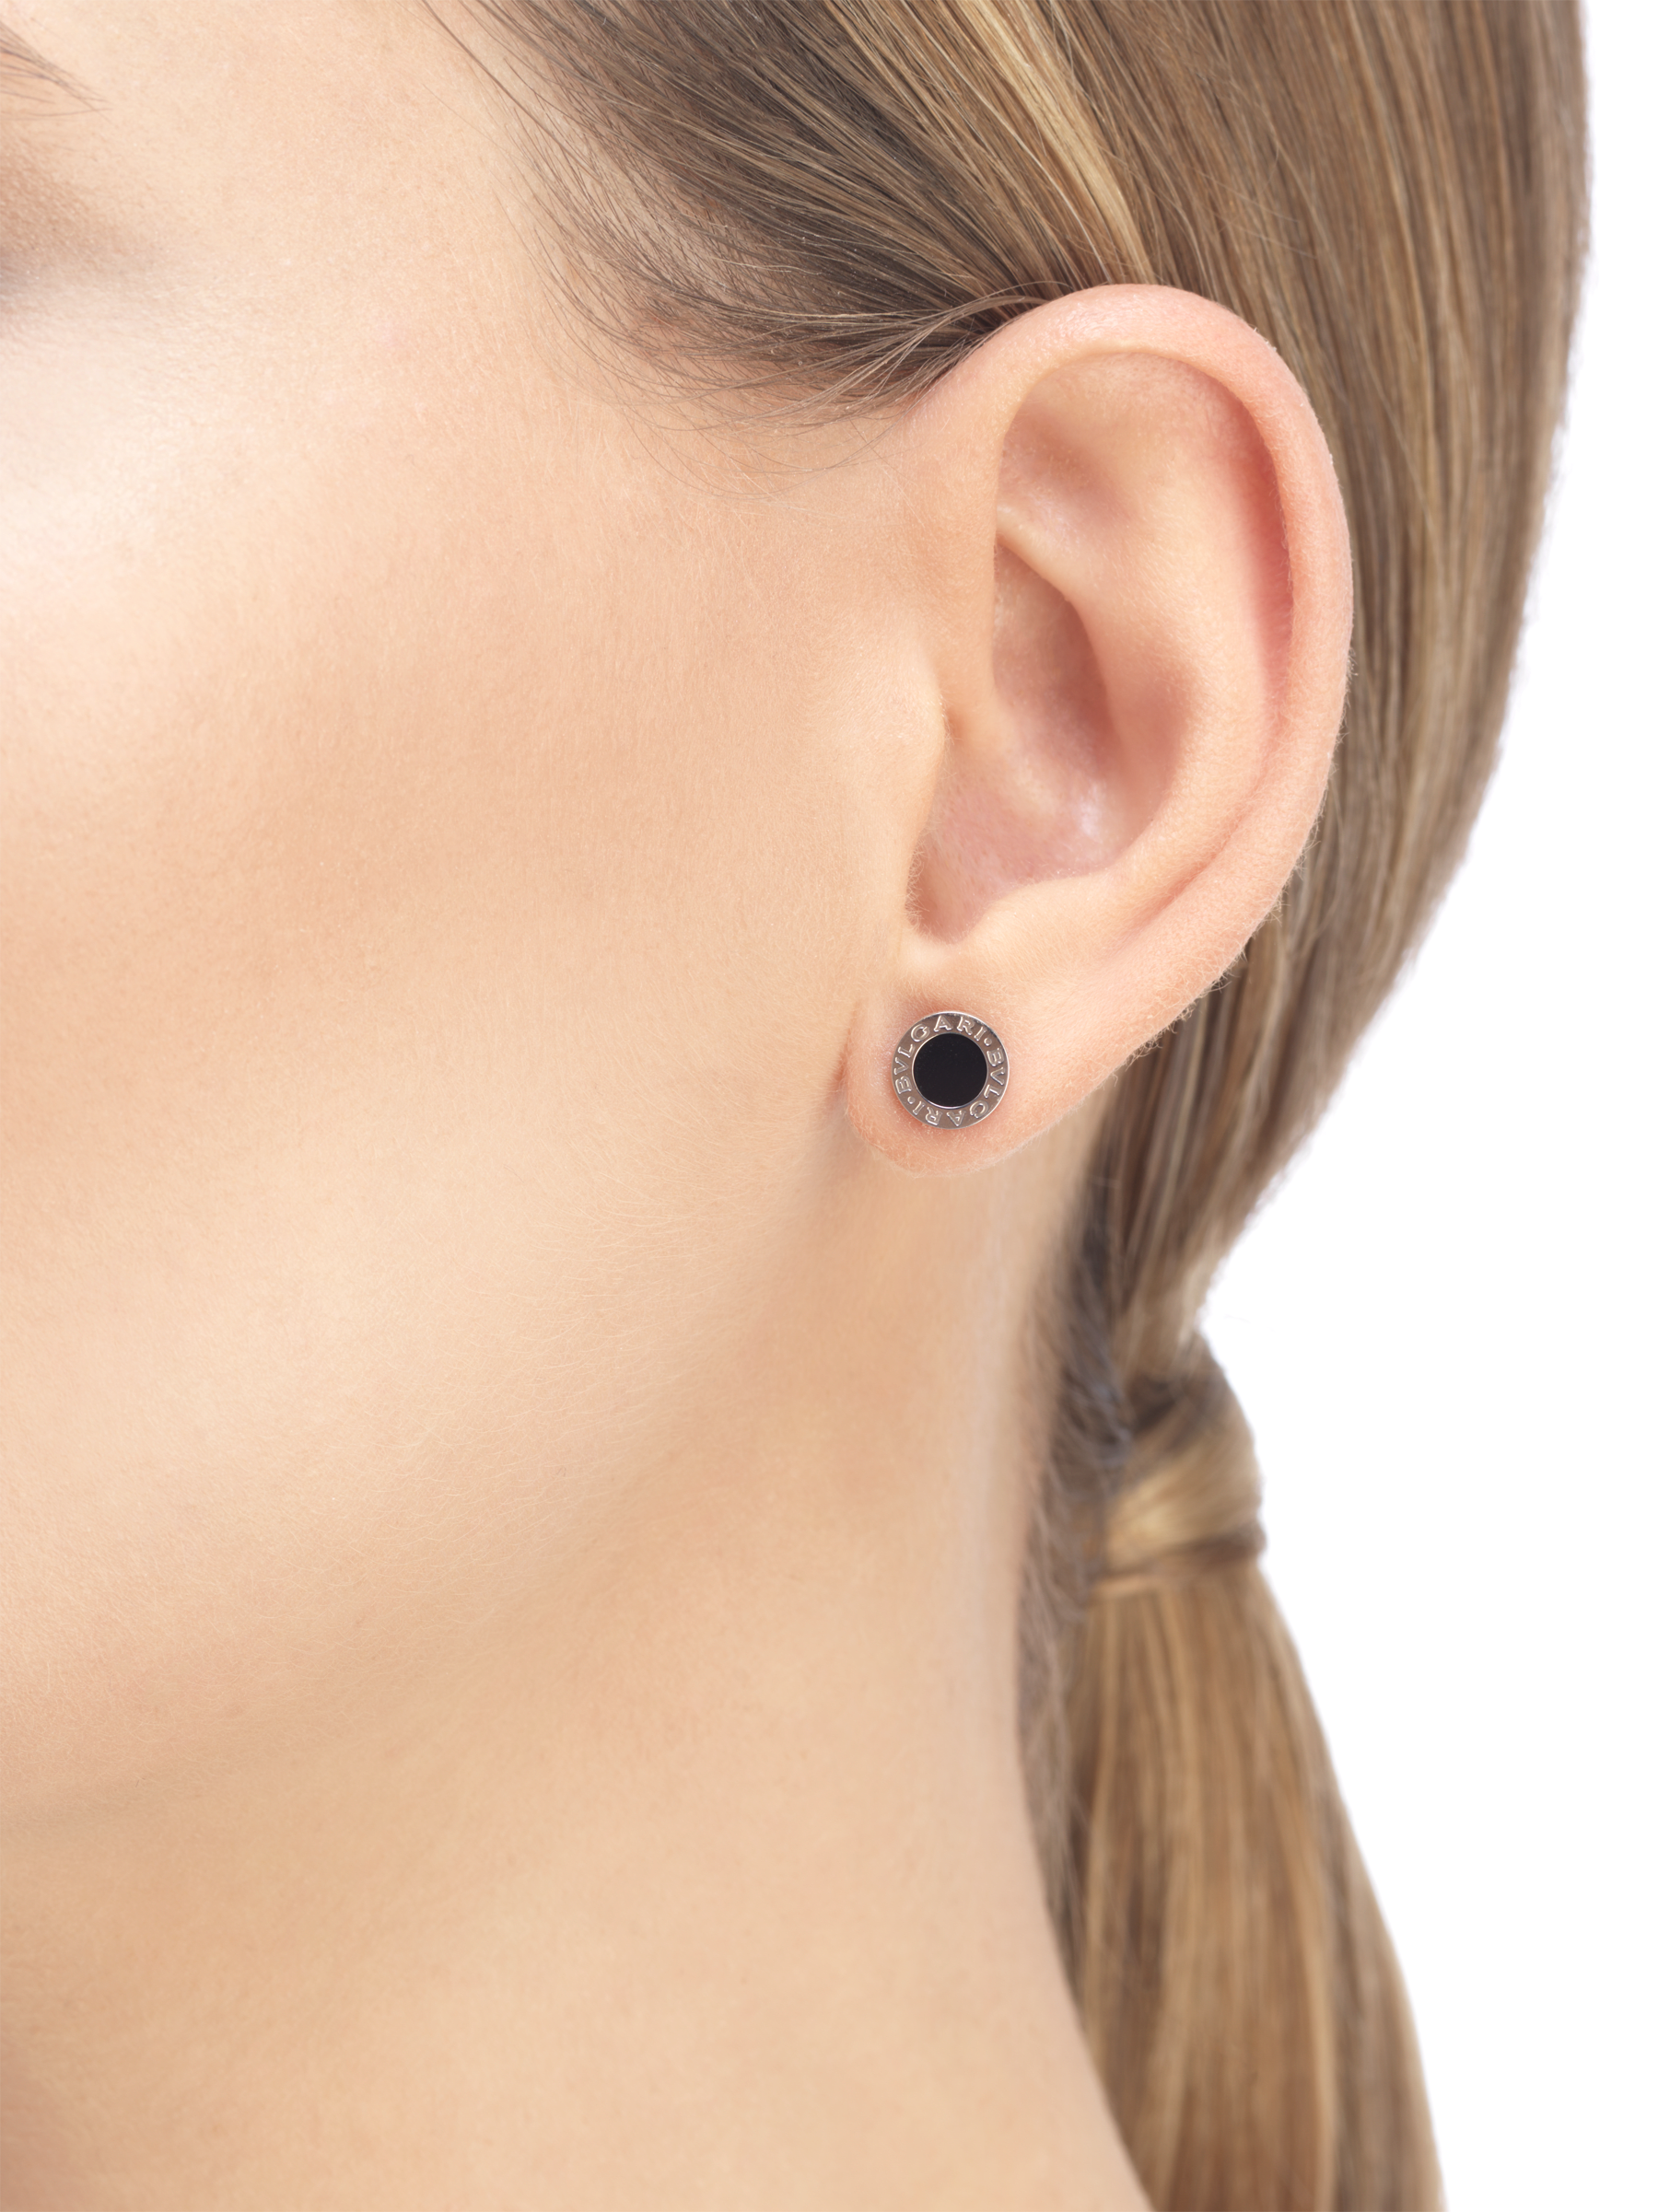 bvlgari black onyx earrings